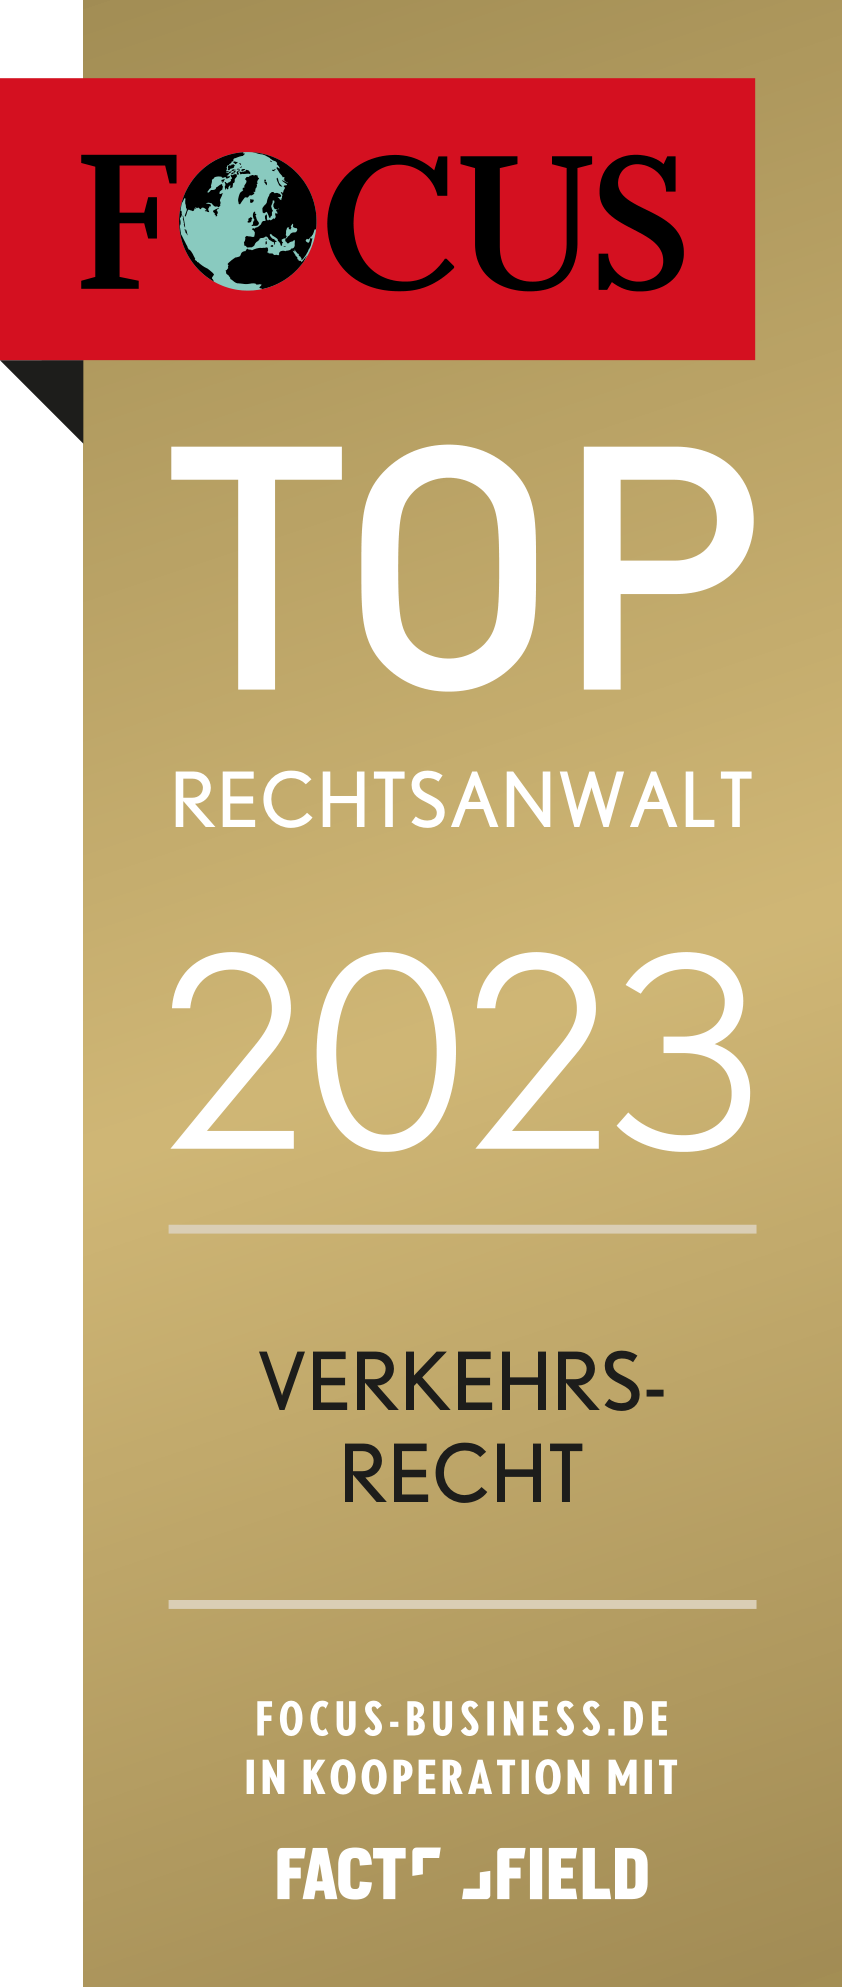 FOCUS TOP-RECHTSANWALT 2023 Verkehrsrecht